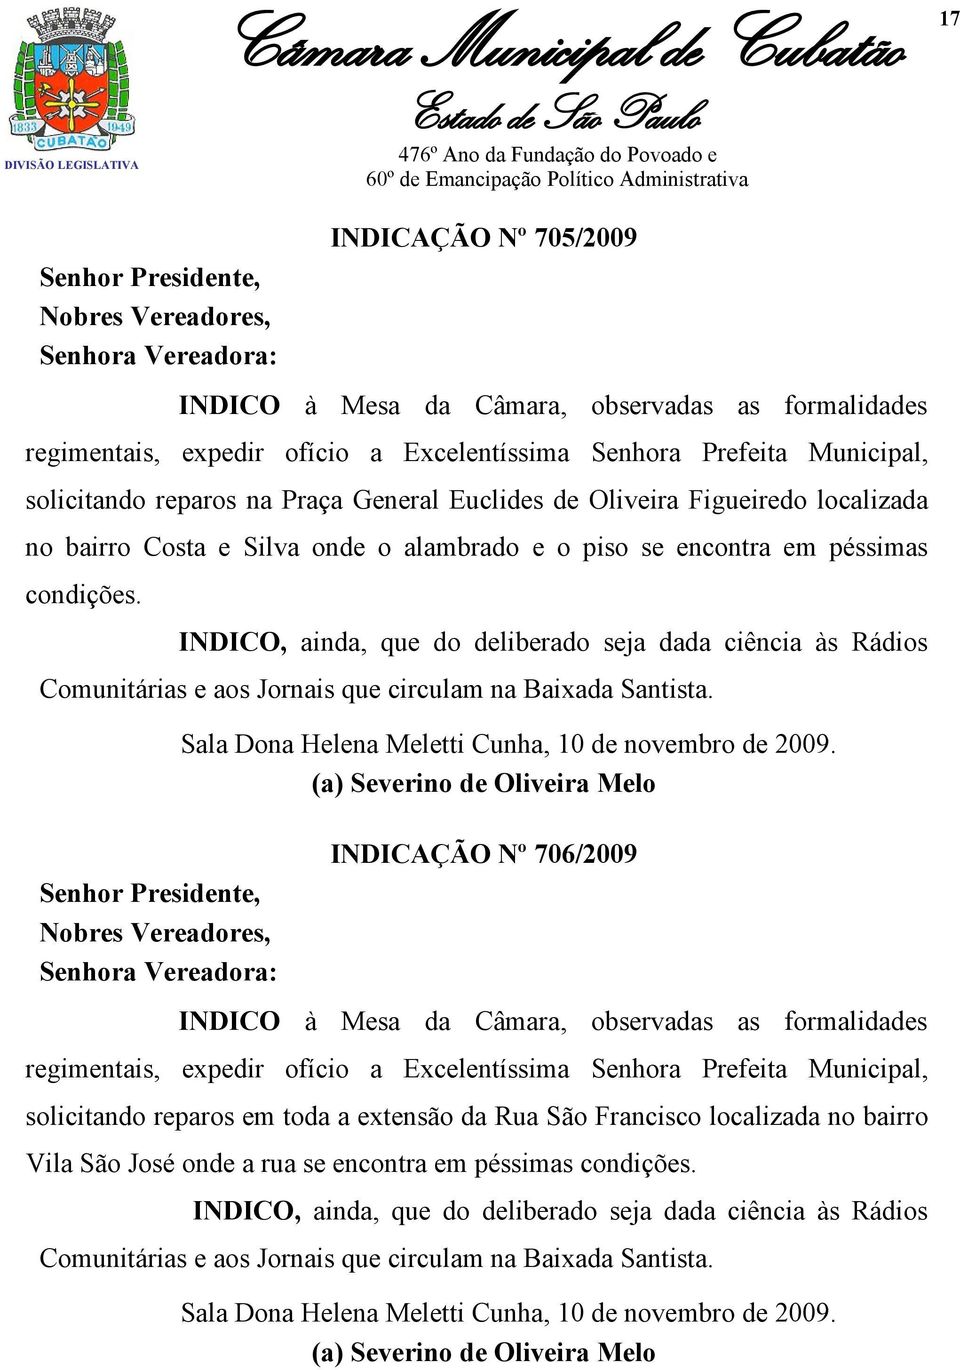 INDICO, ainda, que do deliberado seja dada ciência às Rádios Comunitárias e aos Jornais que circulam na Baixada Santista.